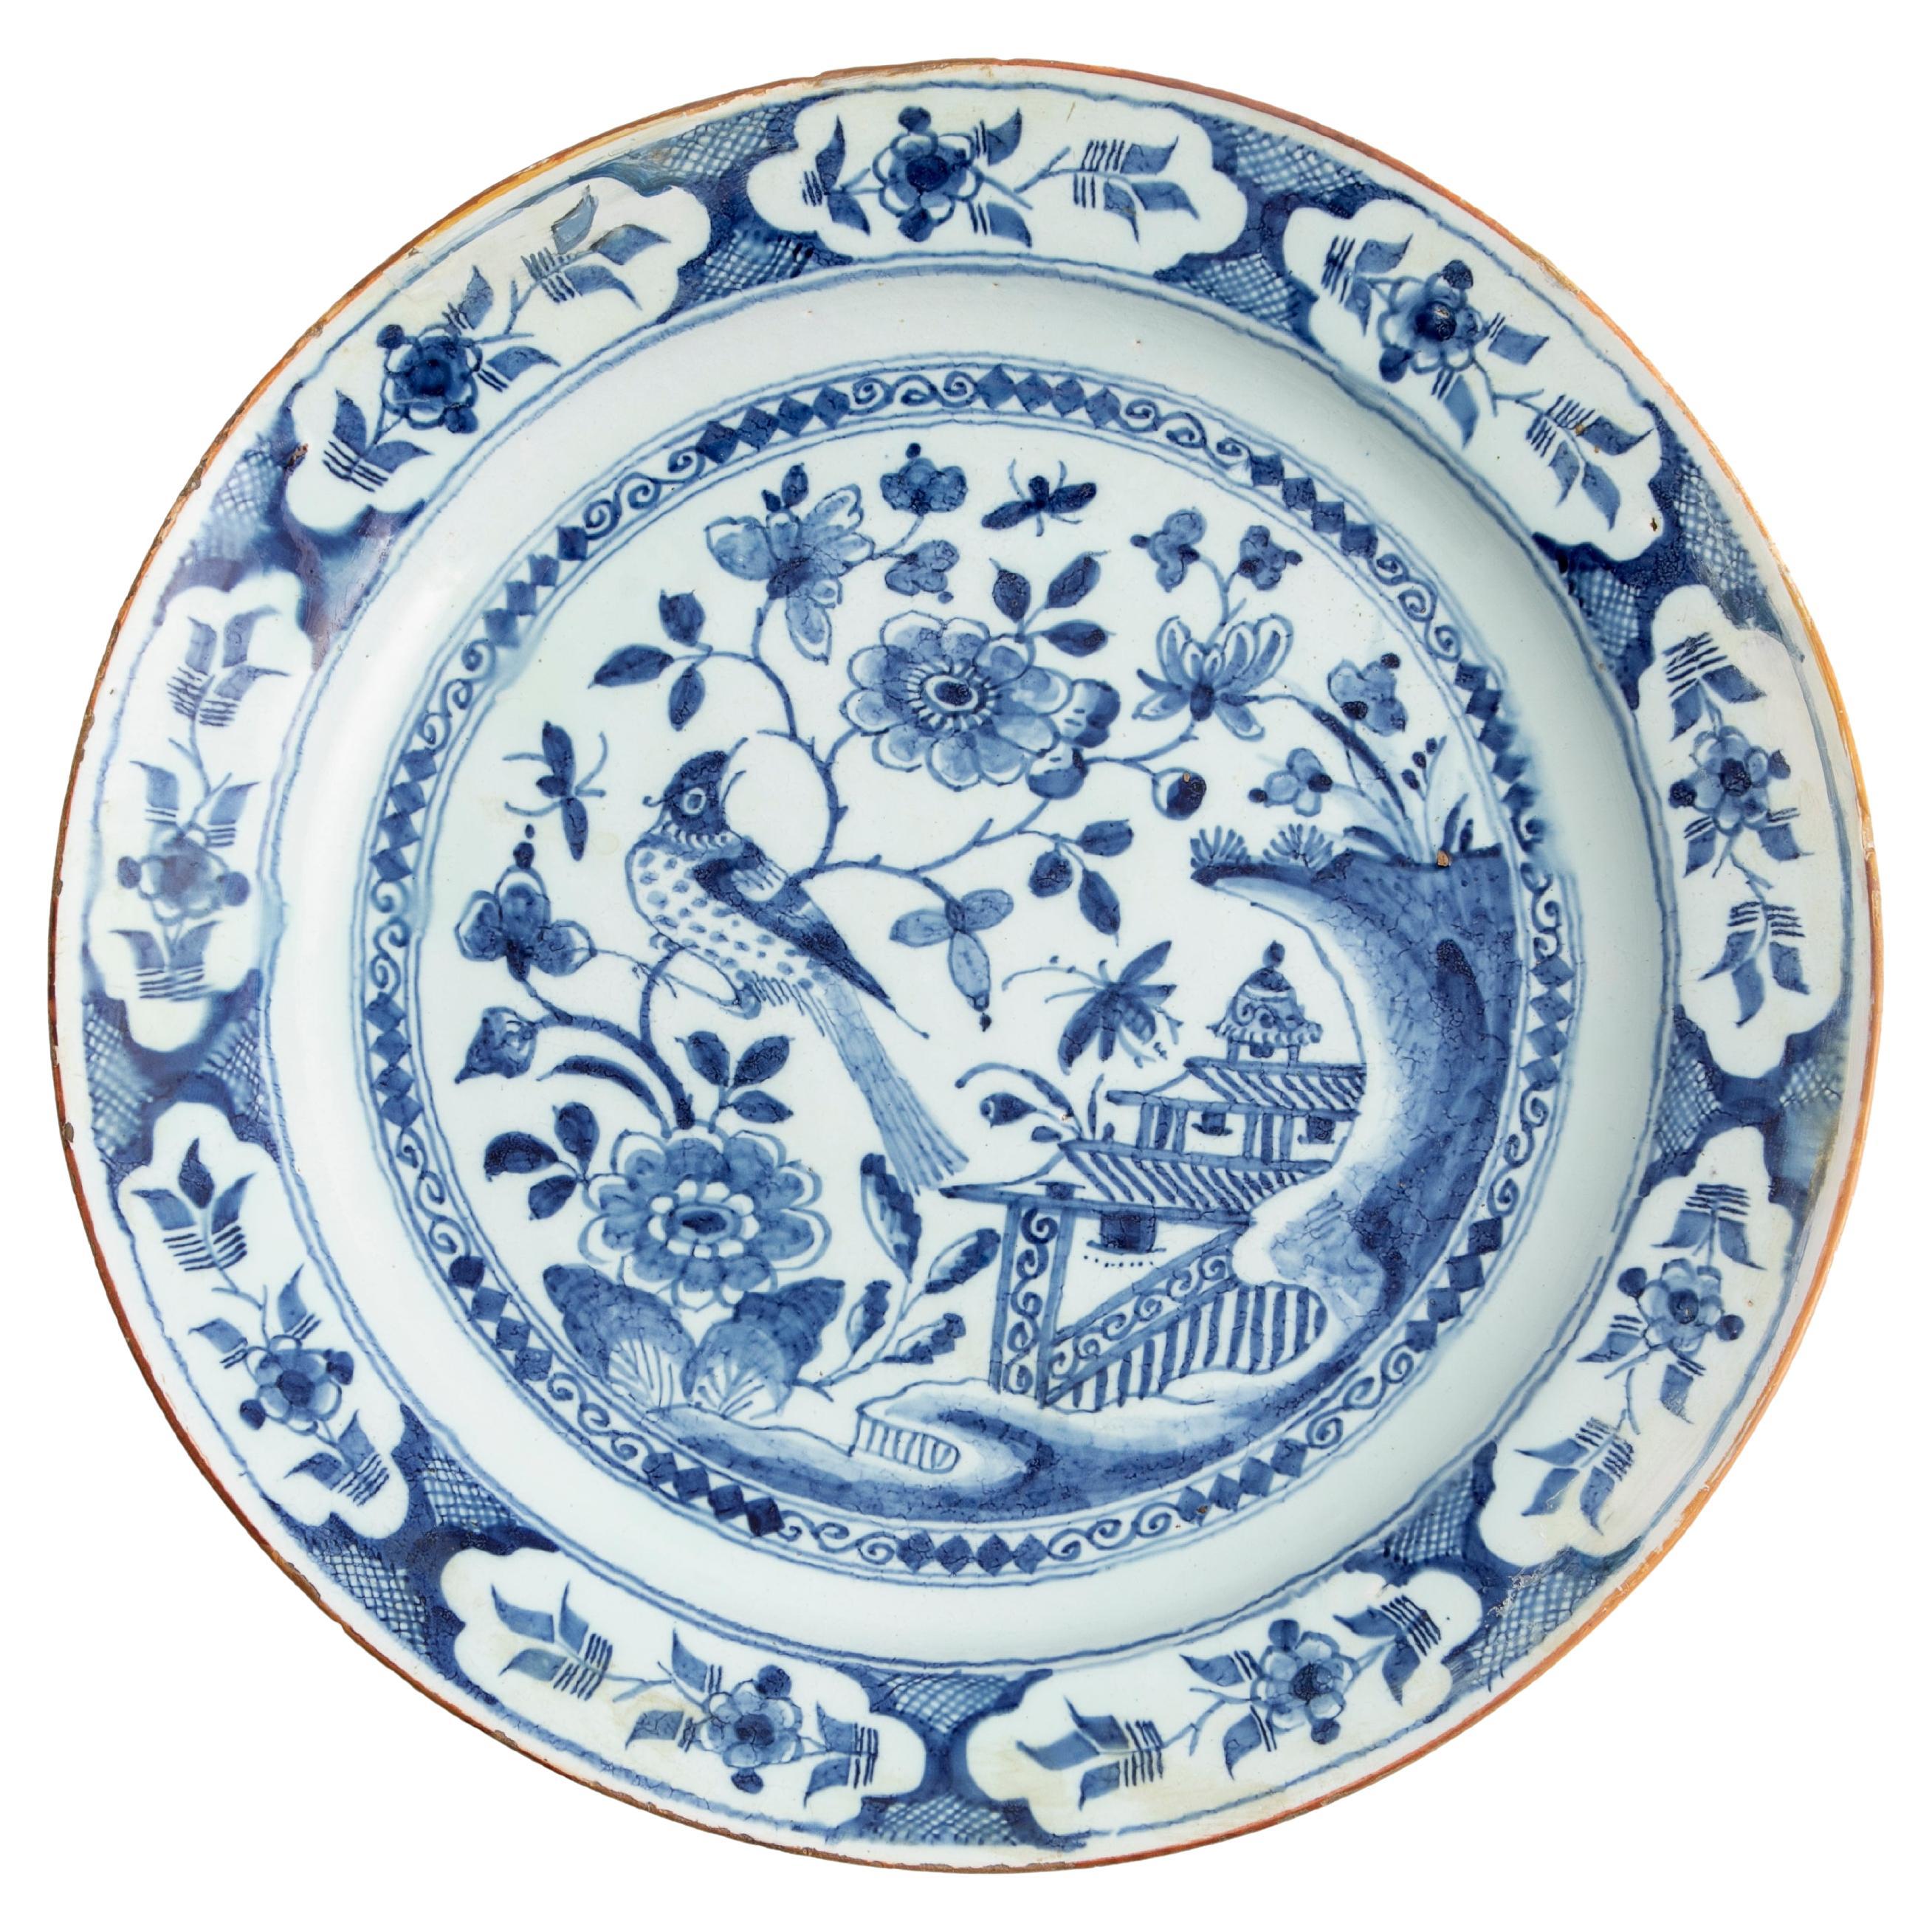 Ancienne assiette néerlandaise en faïence de Delft du 18ème siècle avec décoration de chinoiseries